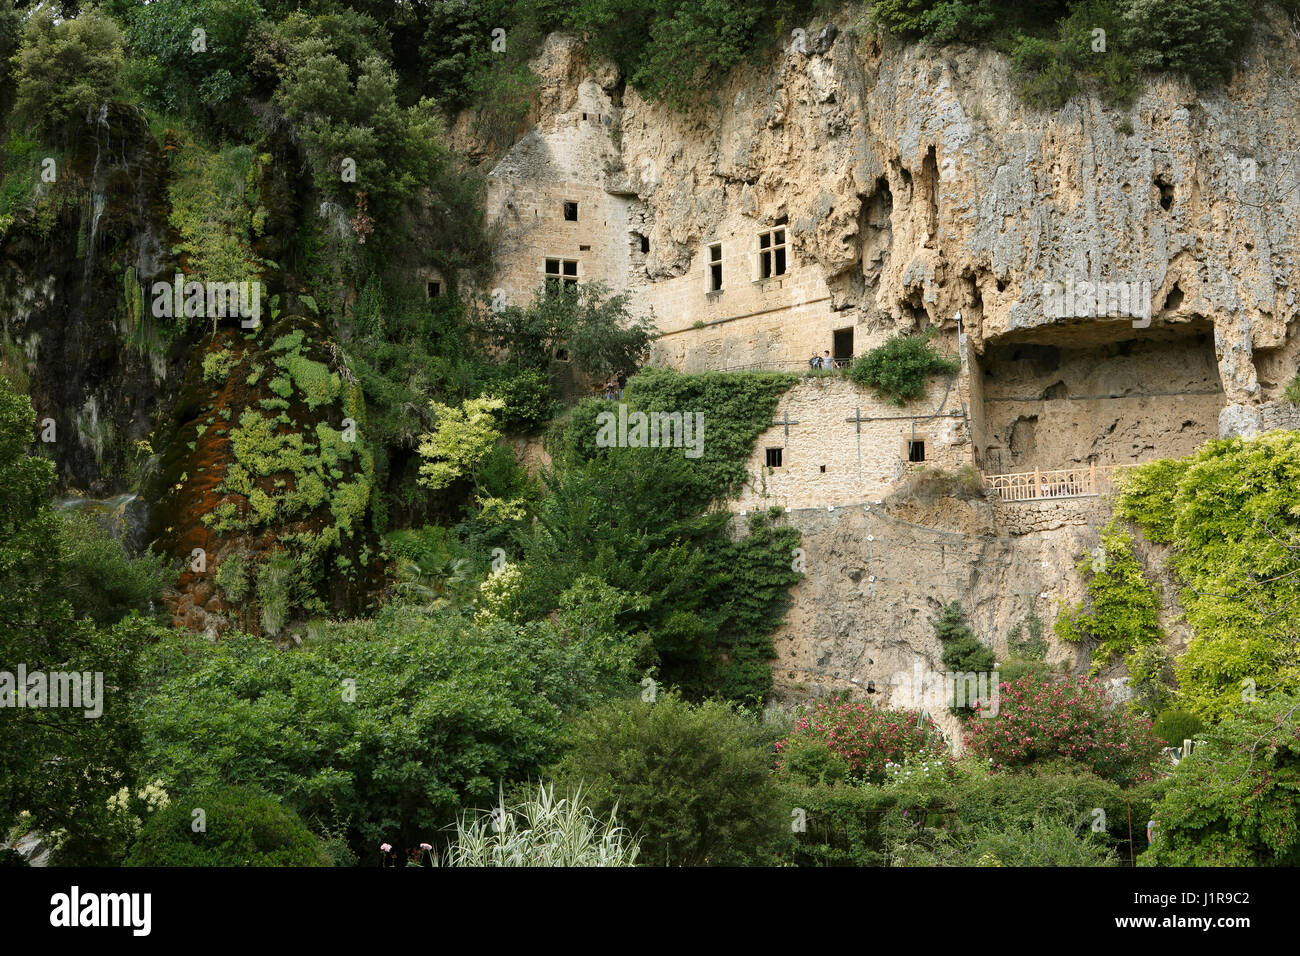 Villecroze cave dwellings, Var department, Provence-Alpes-Côte d'Azur, France Stock Photo